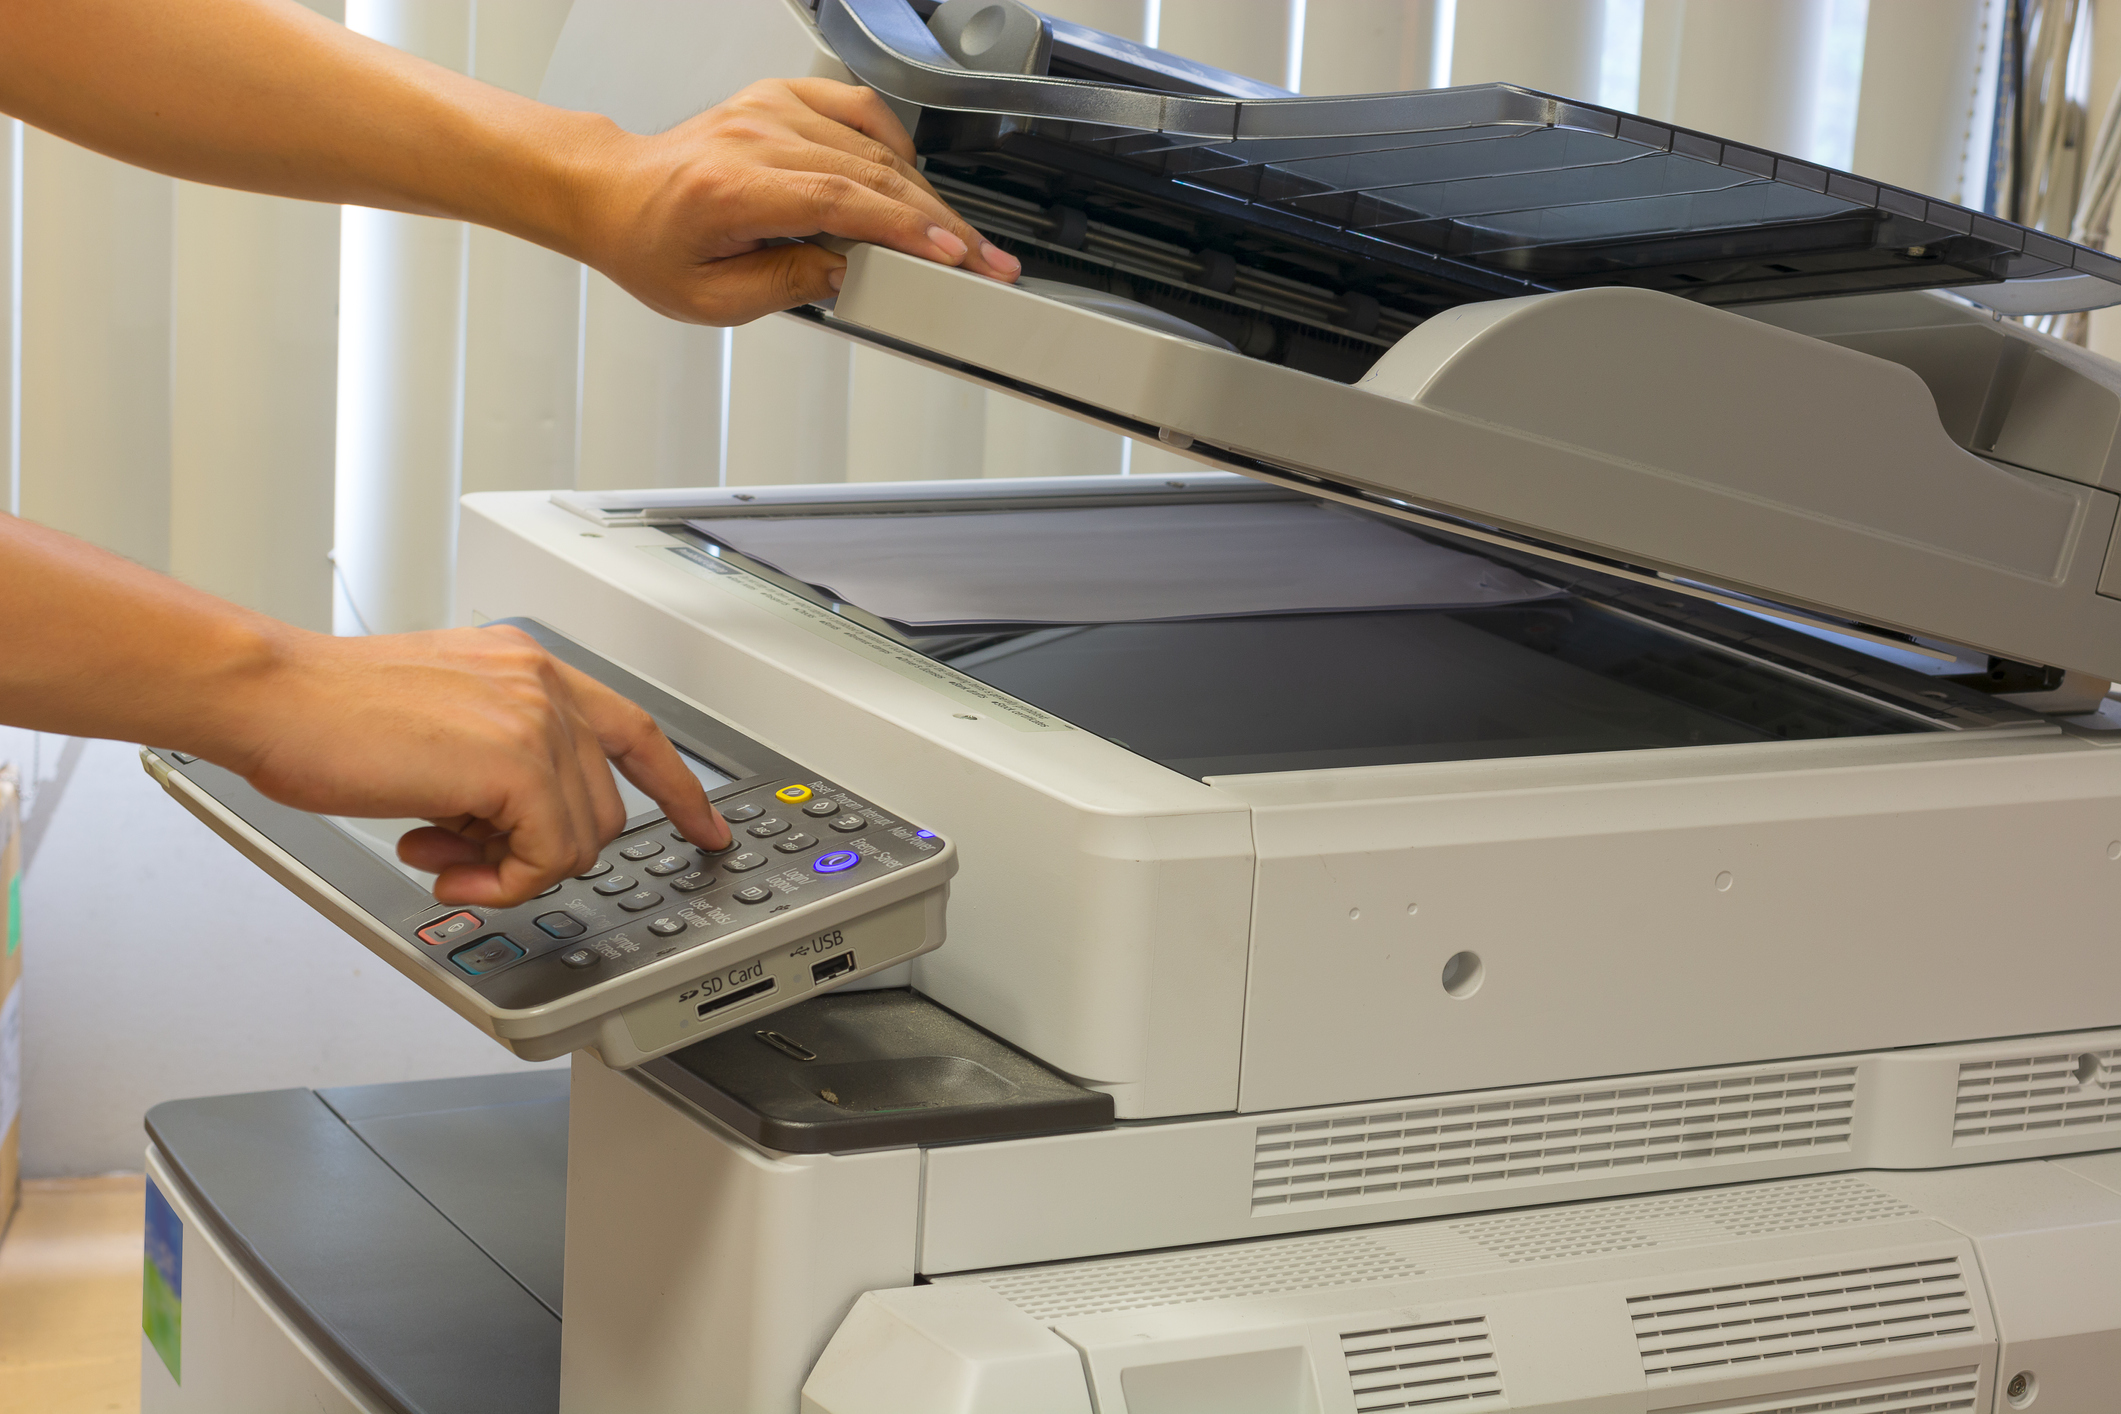 A hand using a fax machine